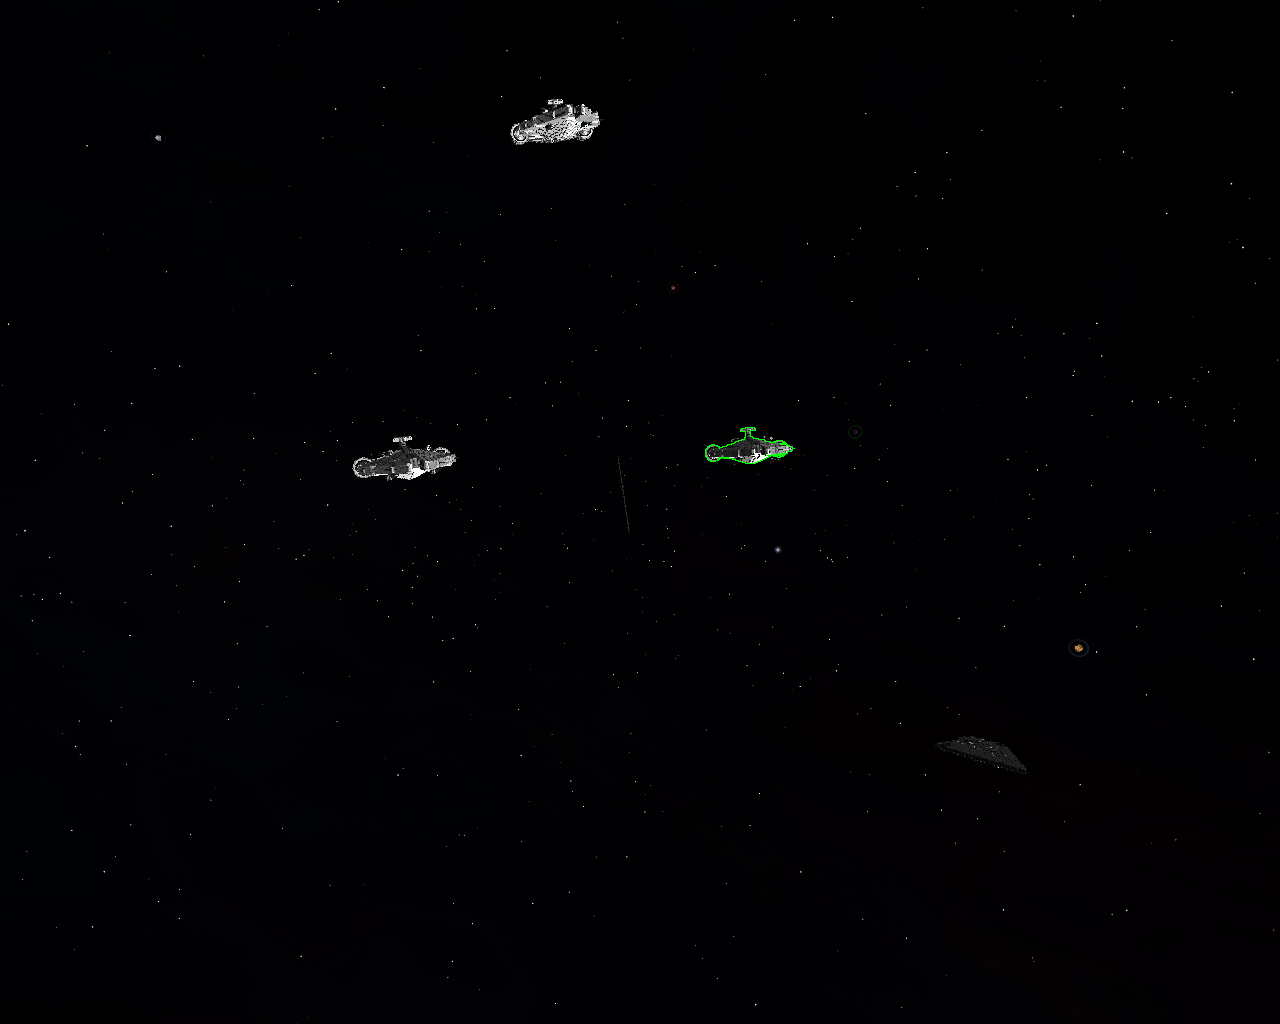 Flotte imperial en approche!